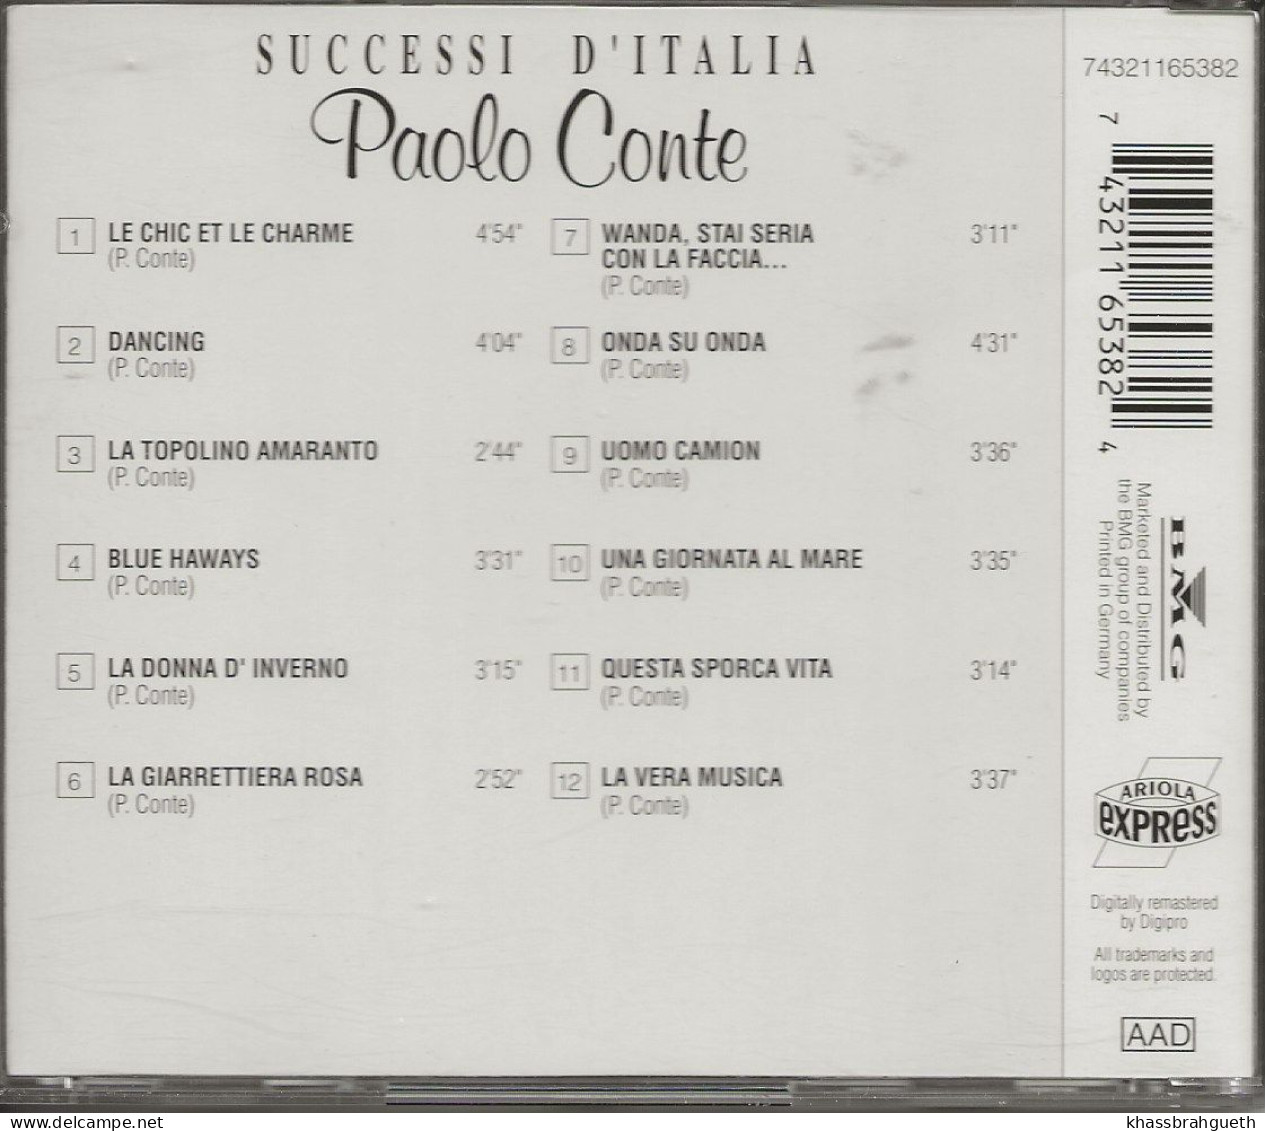 PAOLO CONTE - SUCCESSI D'ITALIA - ARIOLA (1993) (CD ALBUM) - Andere - Italiaans